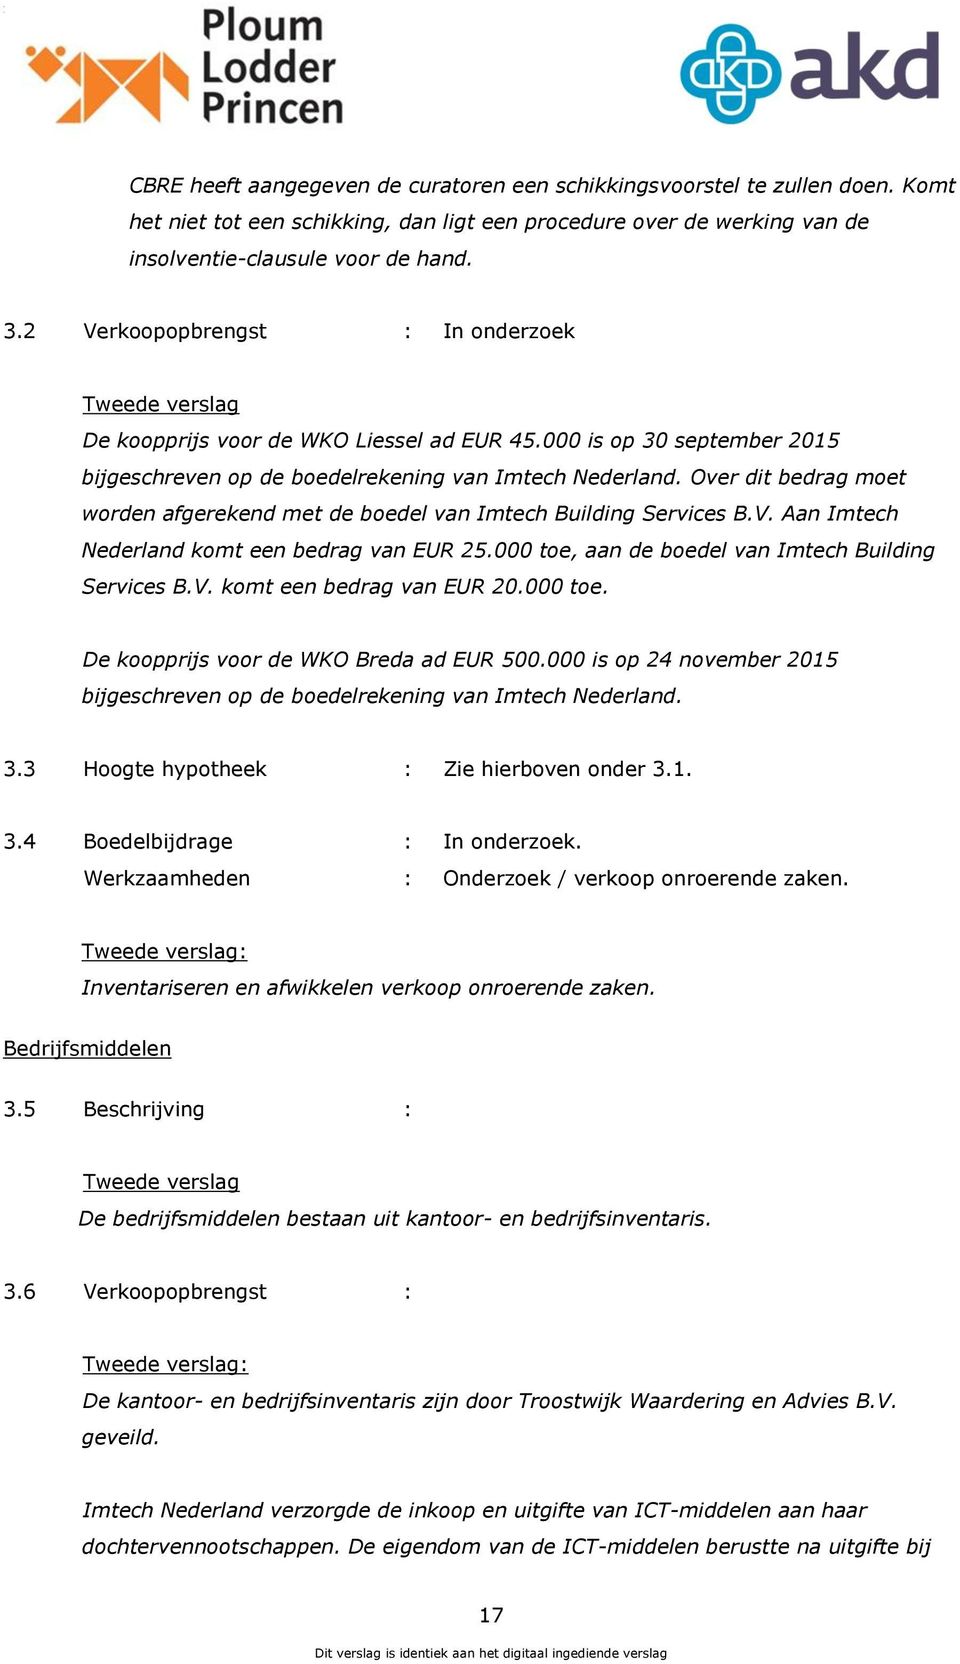 Over dit bedrag moet worden afgerekend met de boedel van Imtech Building Services B.V. Aan Imtech Nederland komt een bedrag van EUR 25.000 toe, aan de boedel van Imtech Building Services B.V. komt een bedrag van EUR 20.